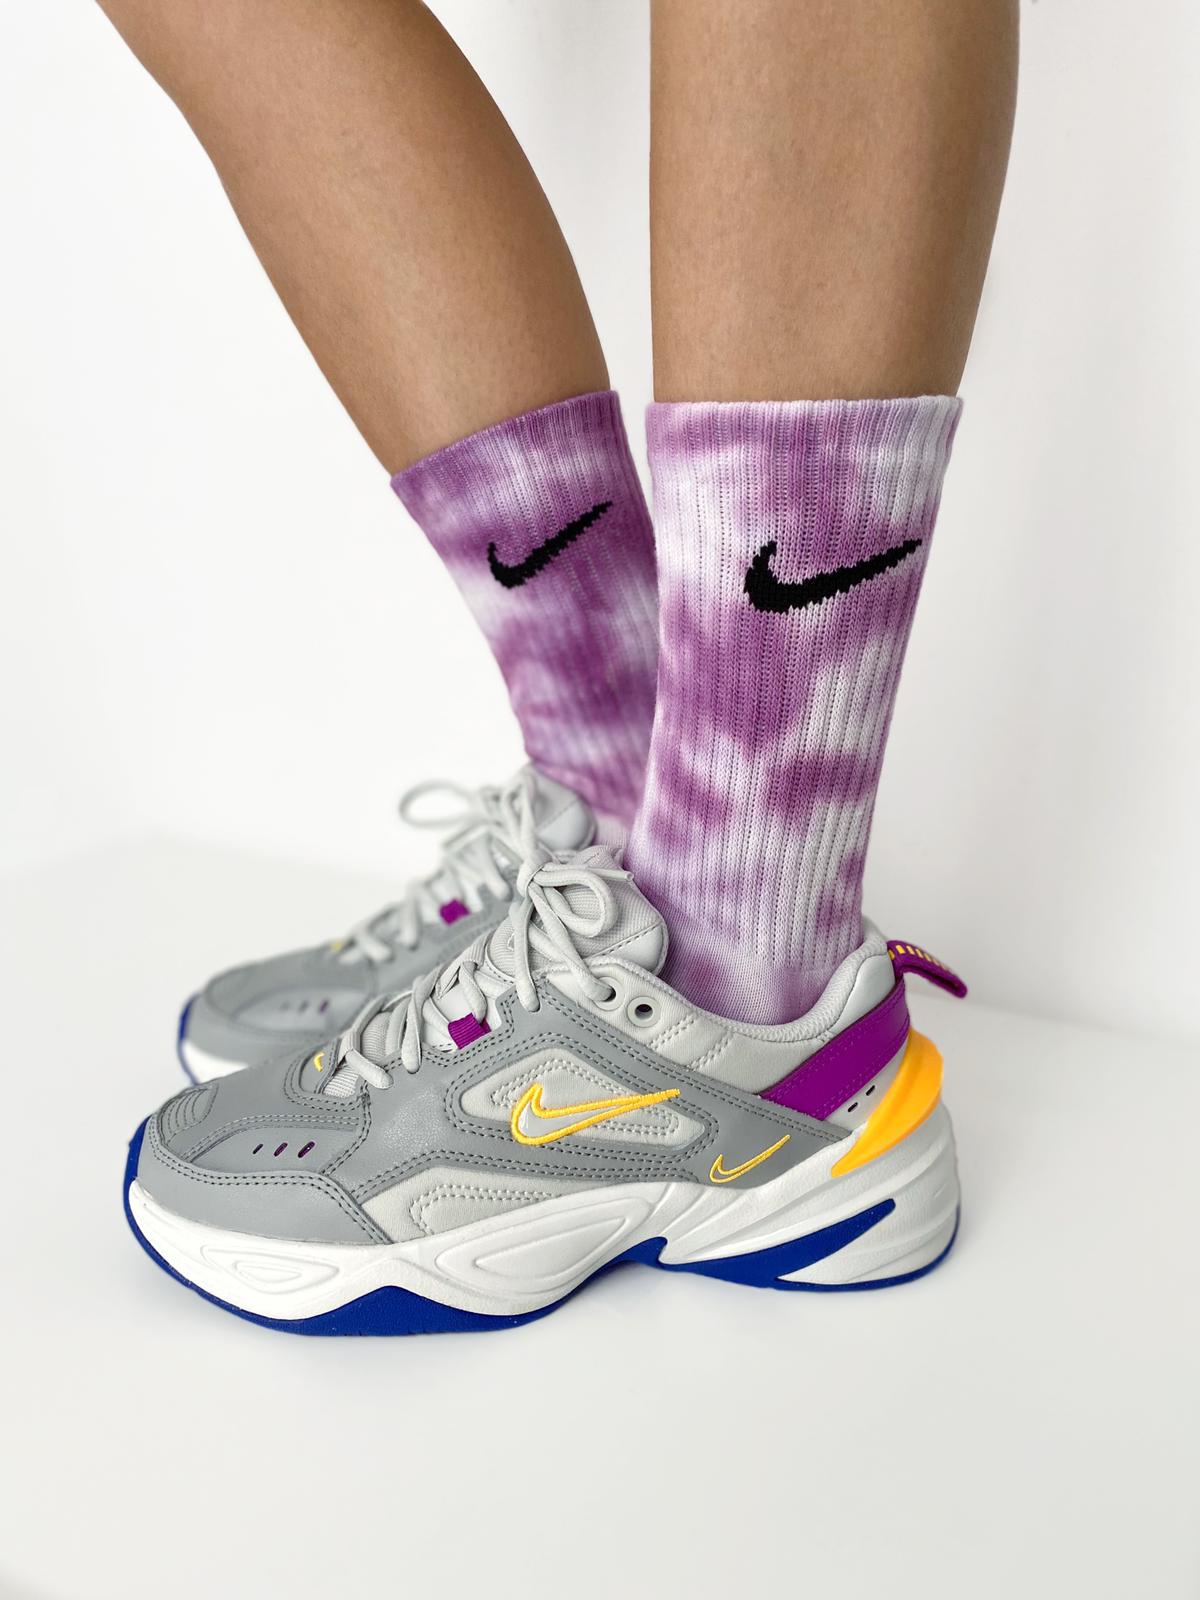 Tye Dye Nike Socks Grape. Colour trip